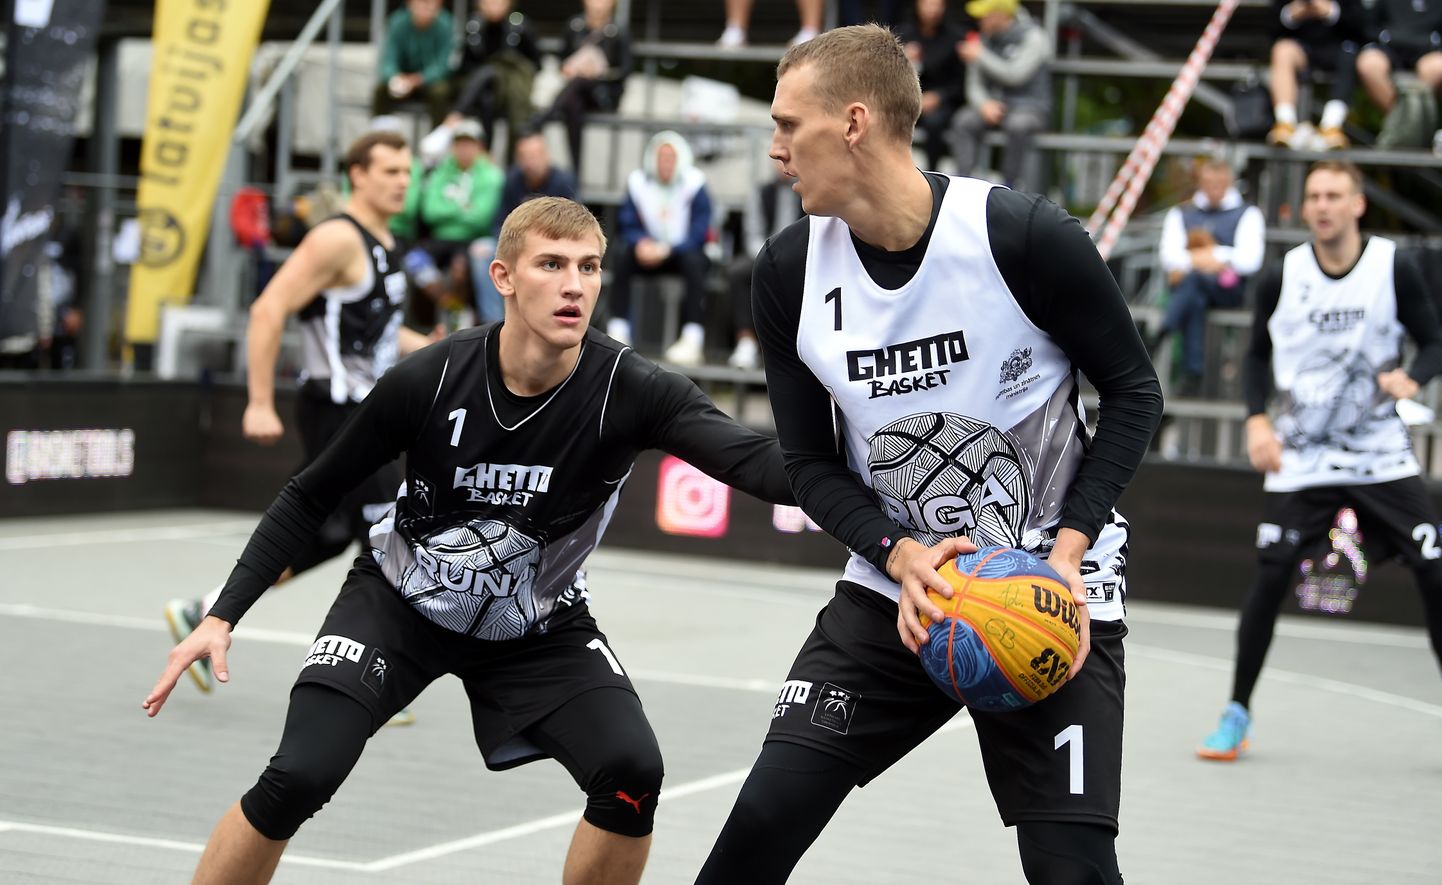 3x3 basketbola turnīrs "Ghetto Basket Rīga Challenger" starp Latvijas komandu "Rīga" un Krievijas komandu "Runa" Grīziņkalnā.